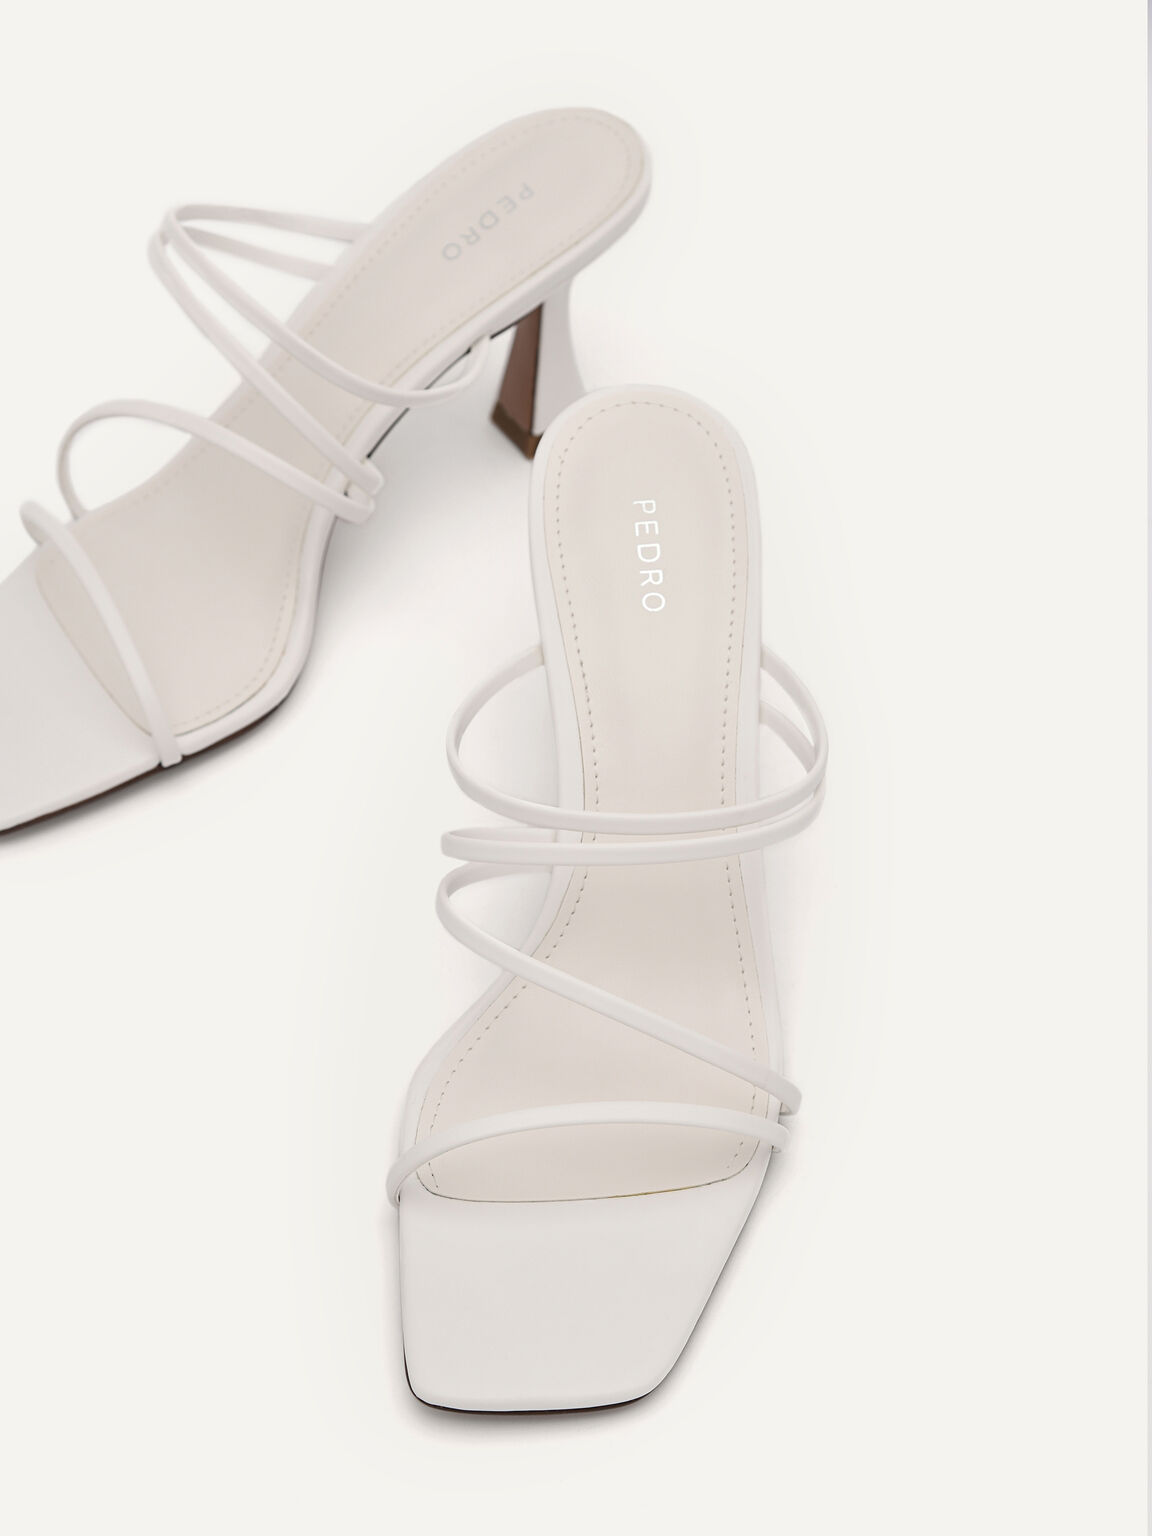 Strappy Heel Sandals - White, White